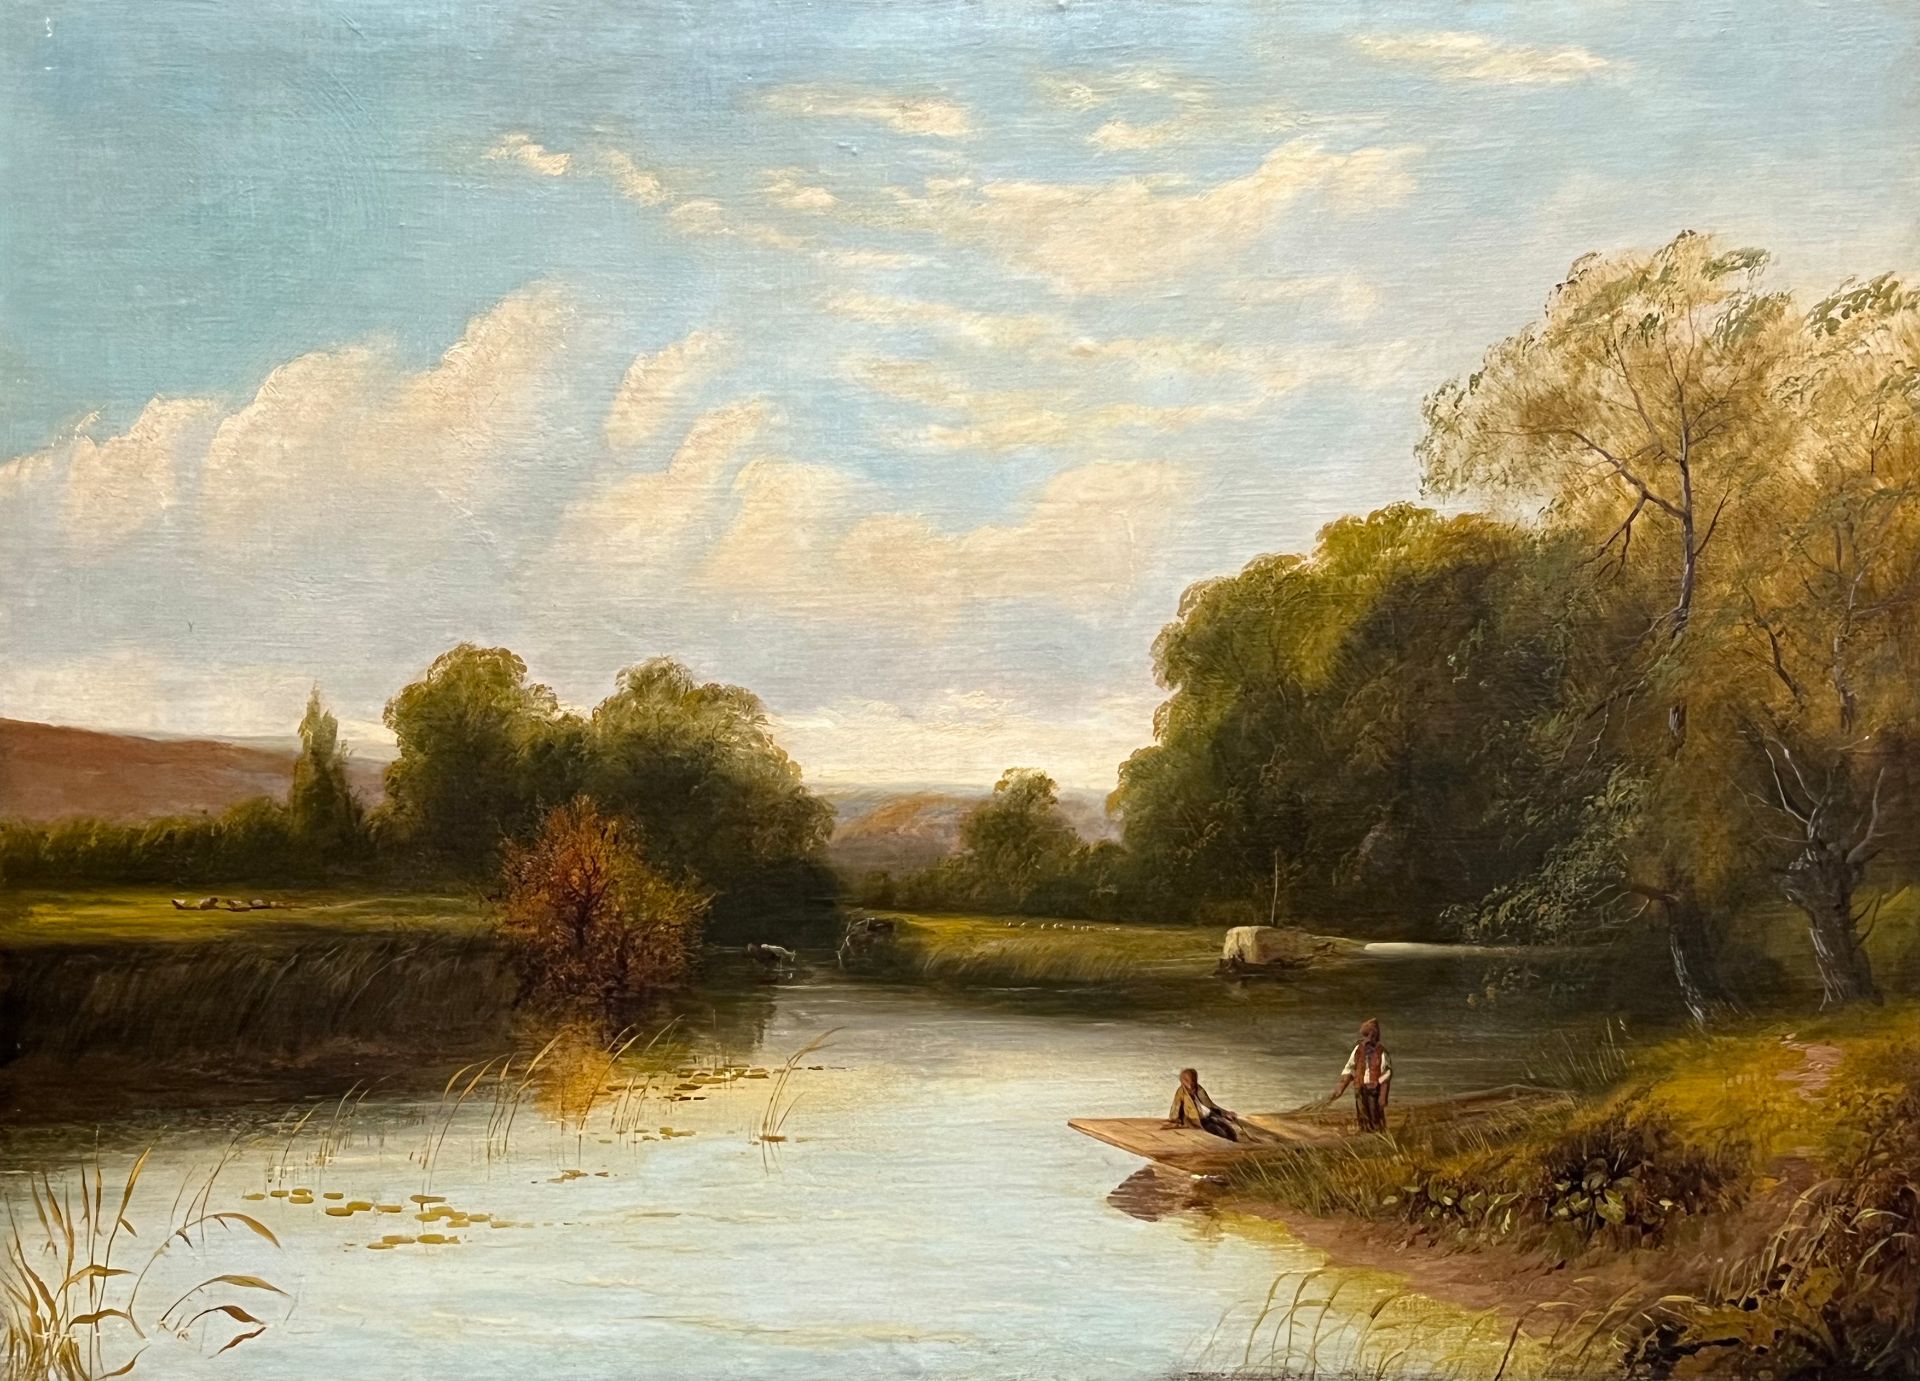 James GARLAND (1846 - 1944). "On the Thames at Medenham". Datiert 1880.